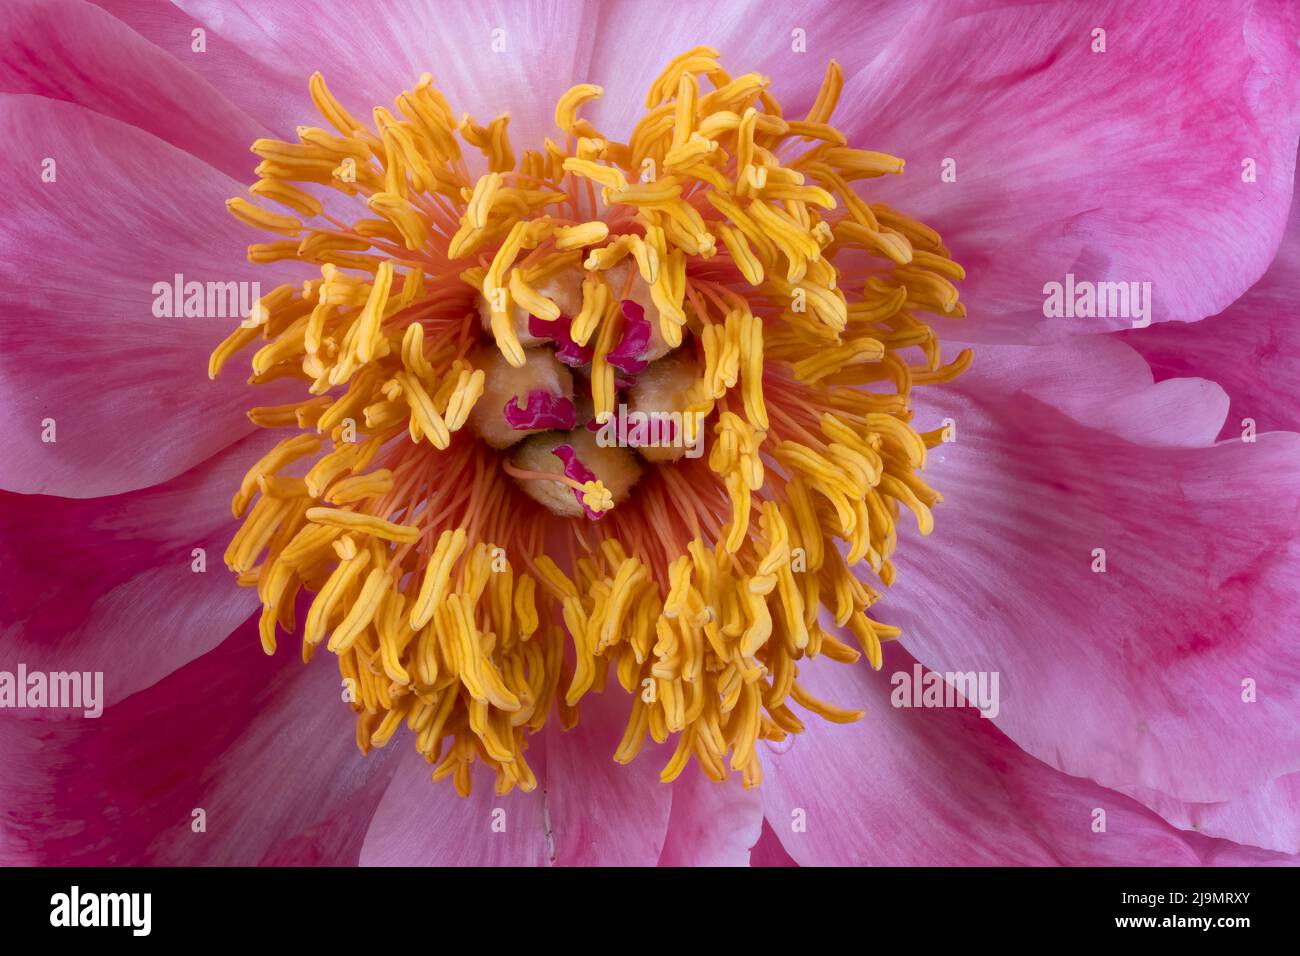 Gros plan sur le centre d'une belle fleur de pivoine rose, montrant les anthères et les étamines jaunes Banque D'Images